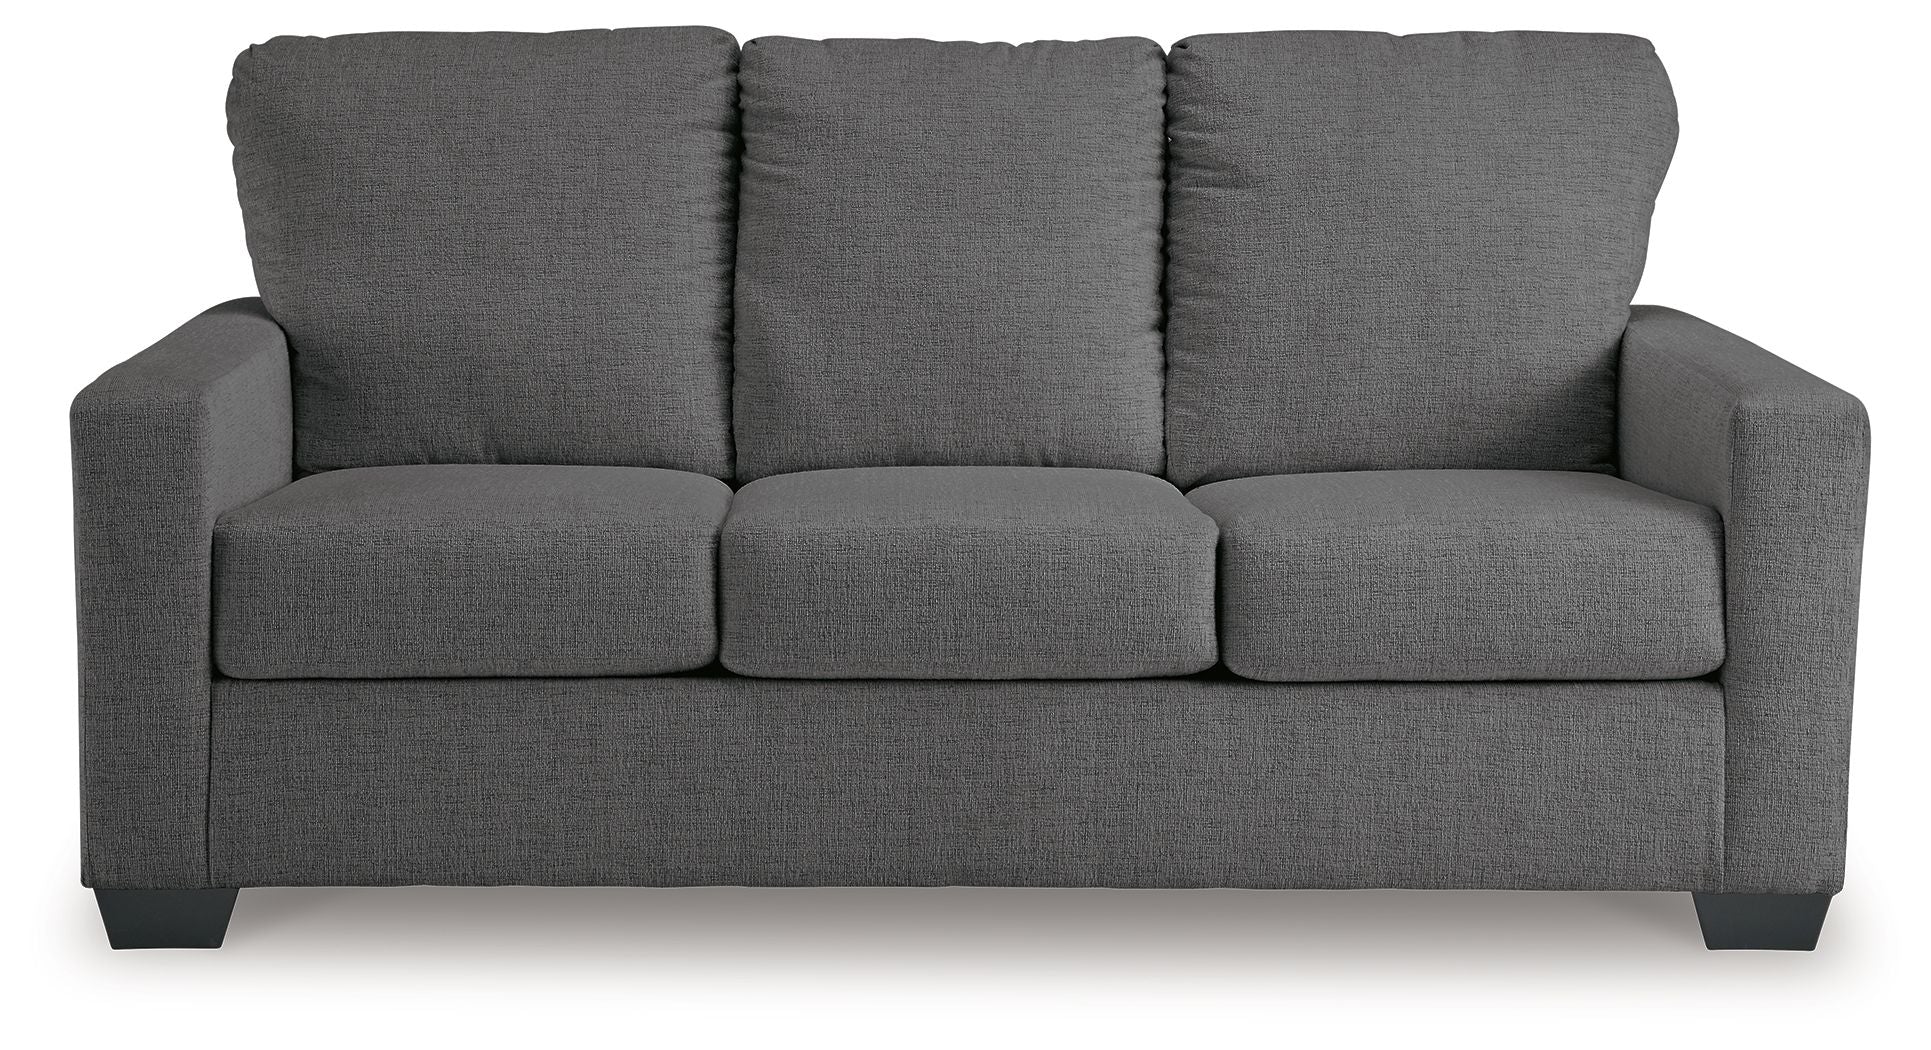 Rannis - Pewter - Full Sofa Sleeper - Fabric